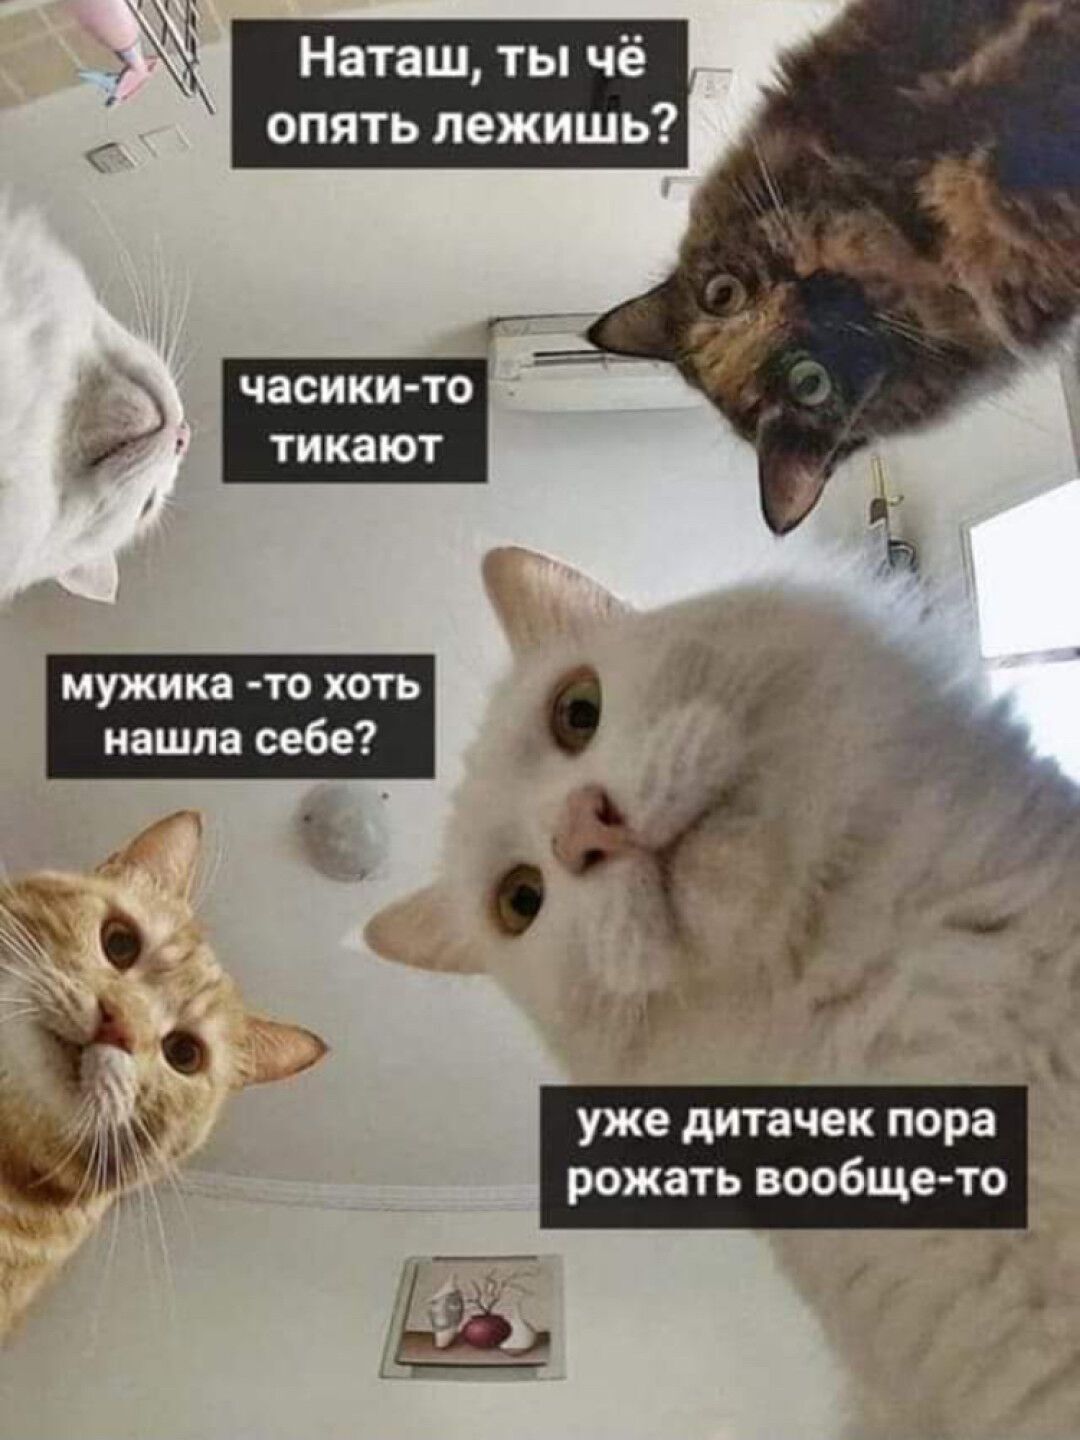 Популярний мем із котами й ім'ям Наташа